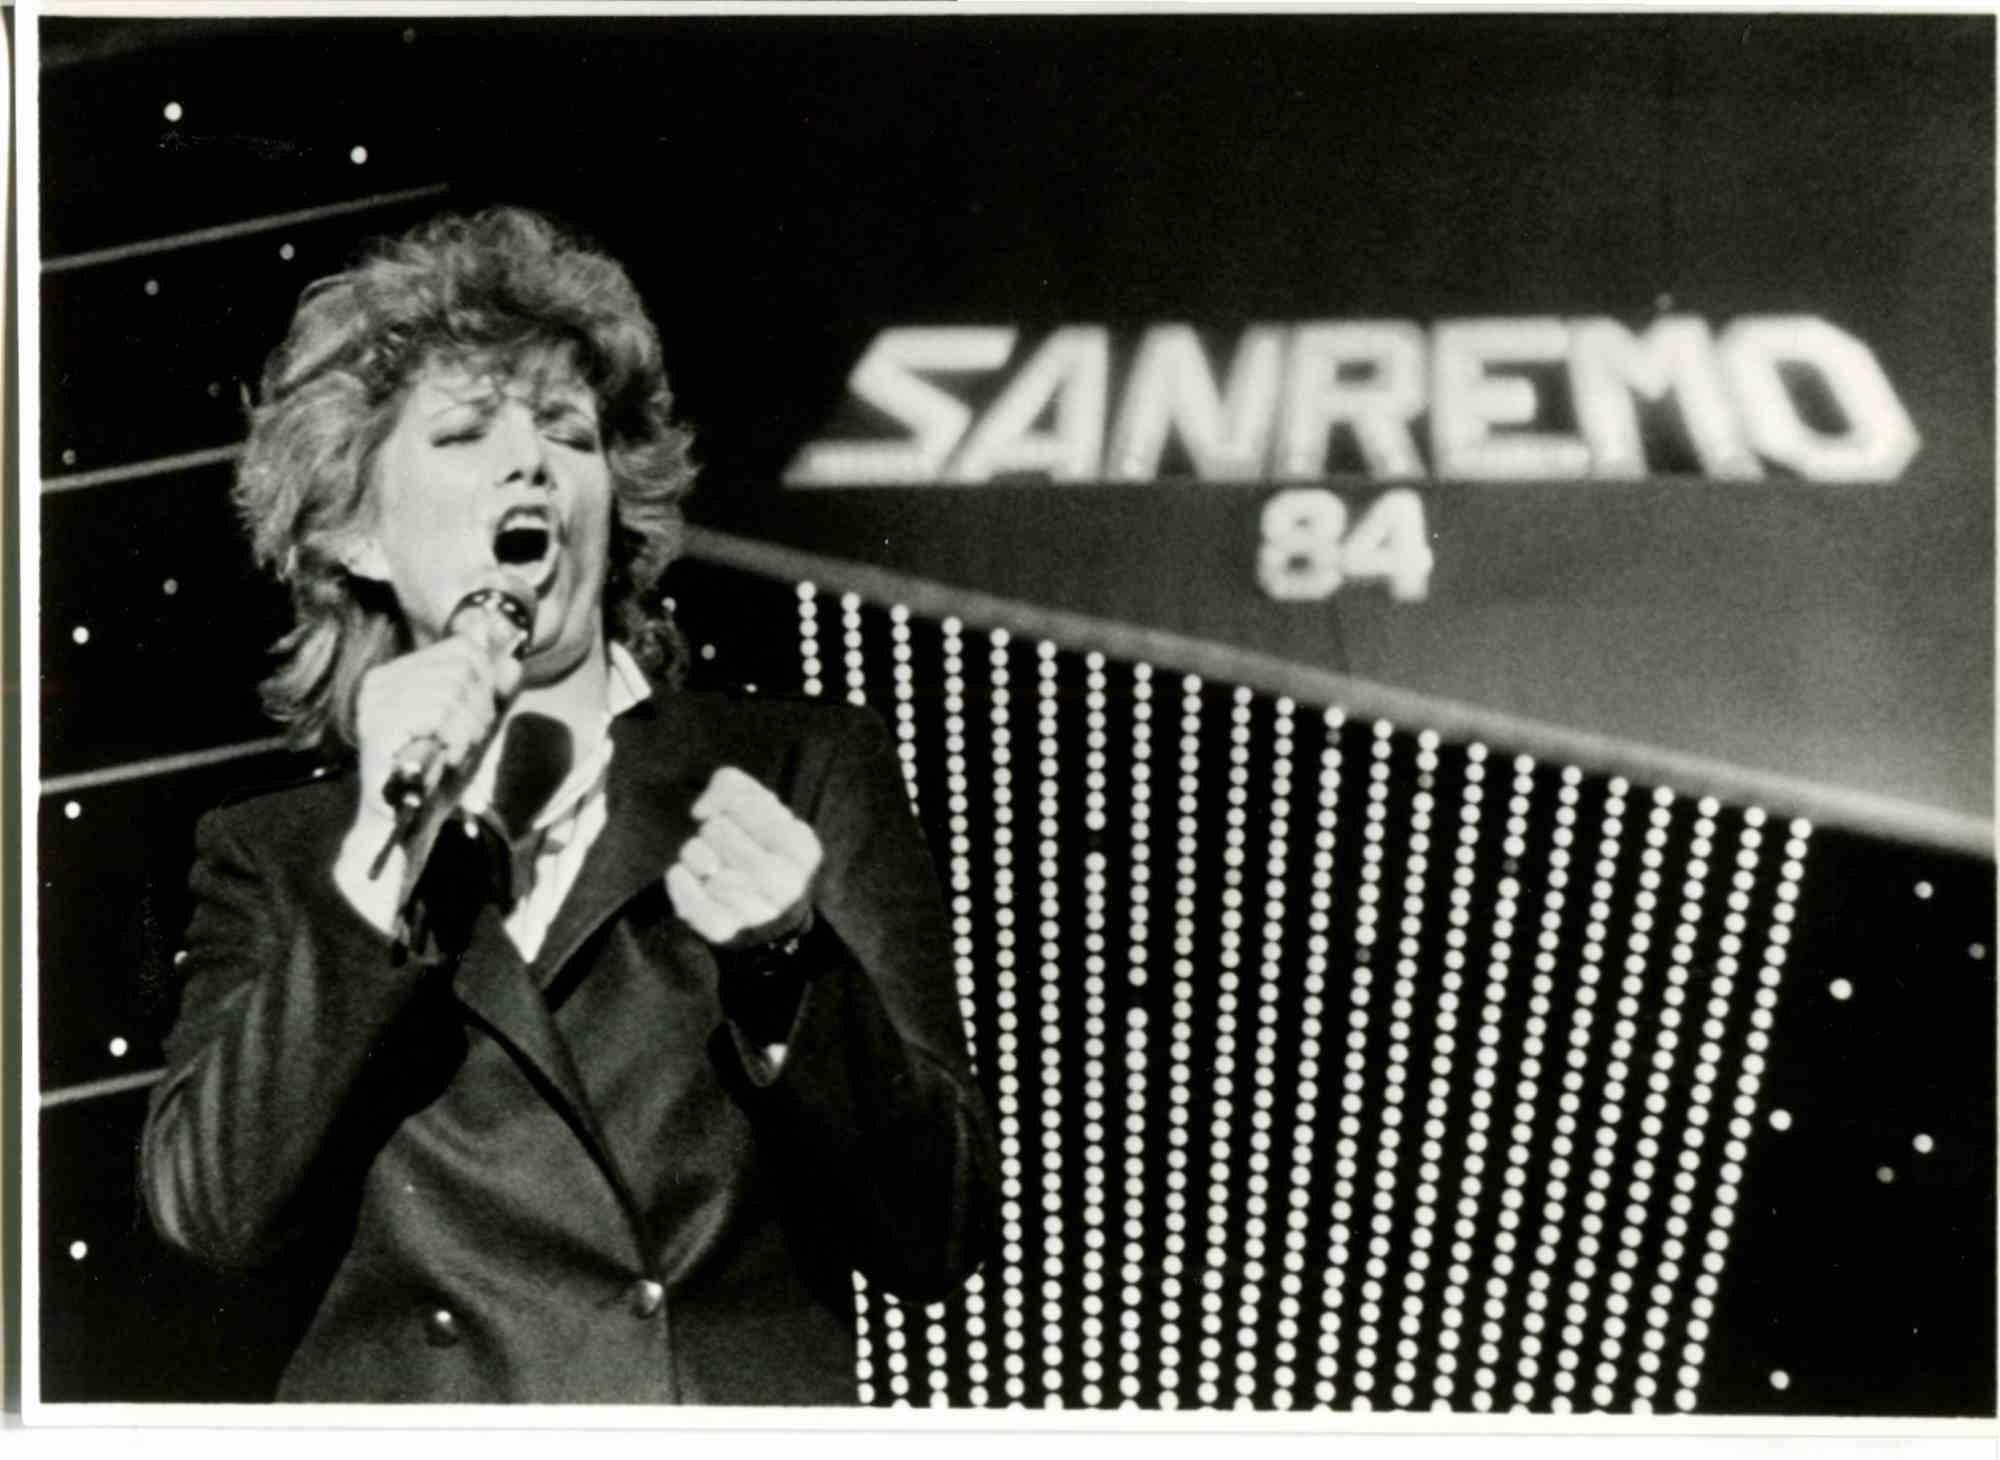  Iva Zanicchi au Festival de Sanremo 84 - Photo- 1980